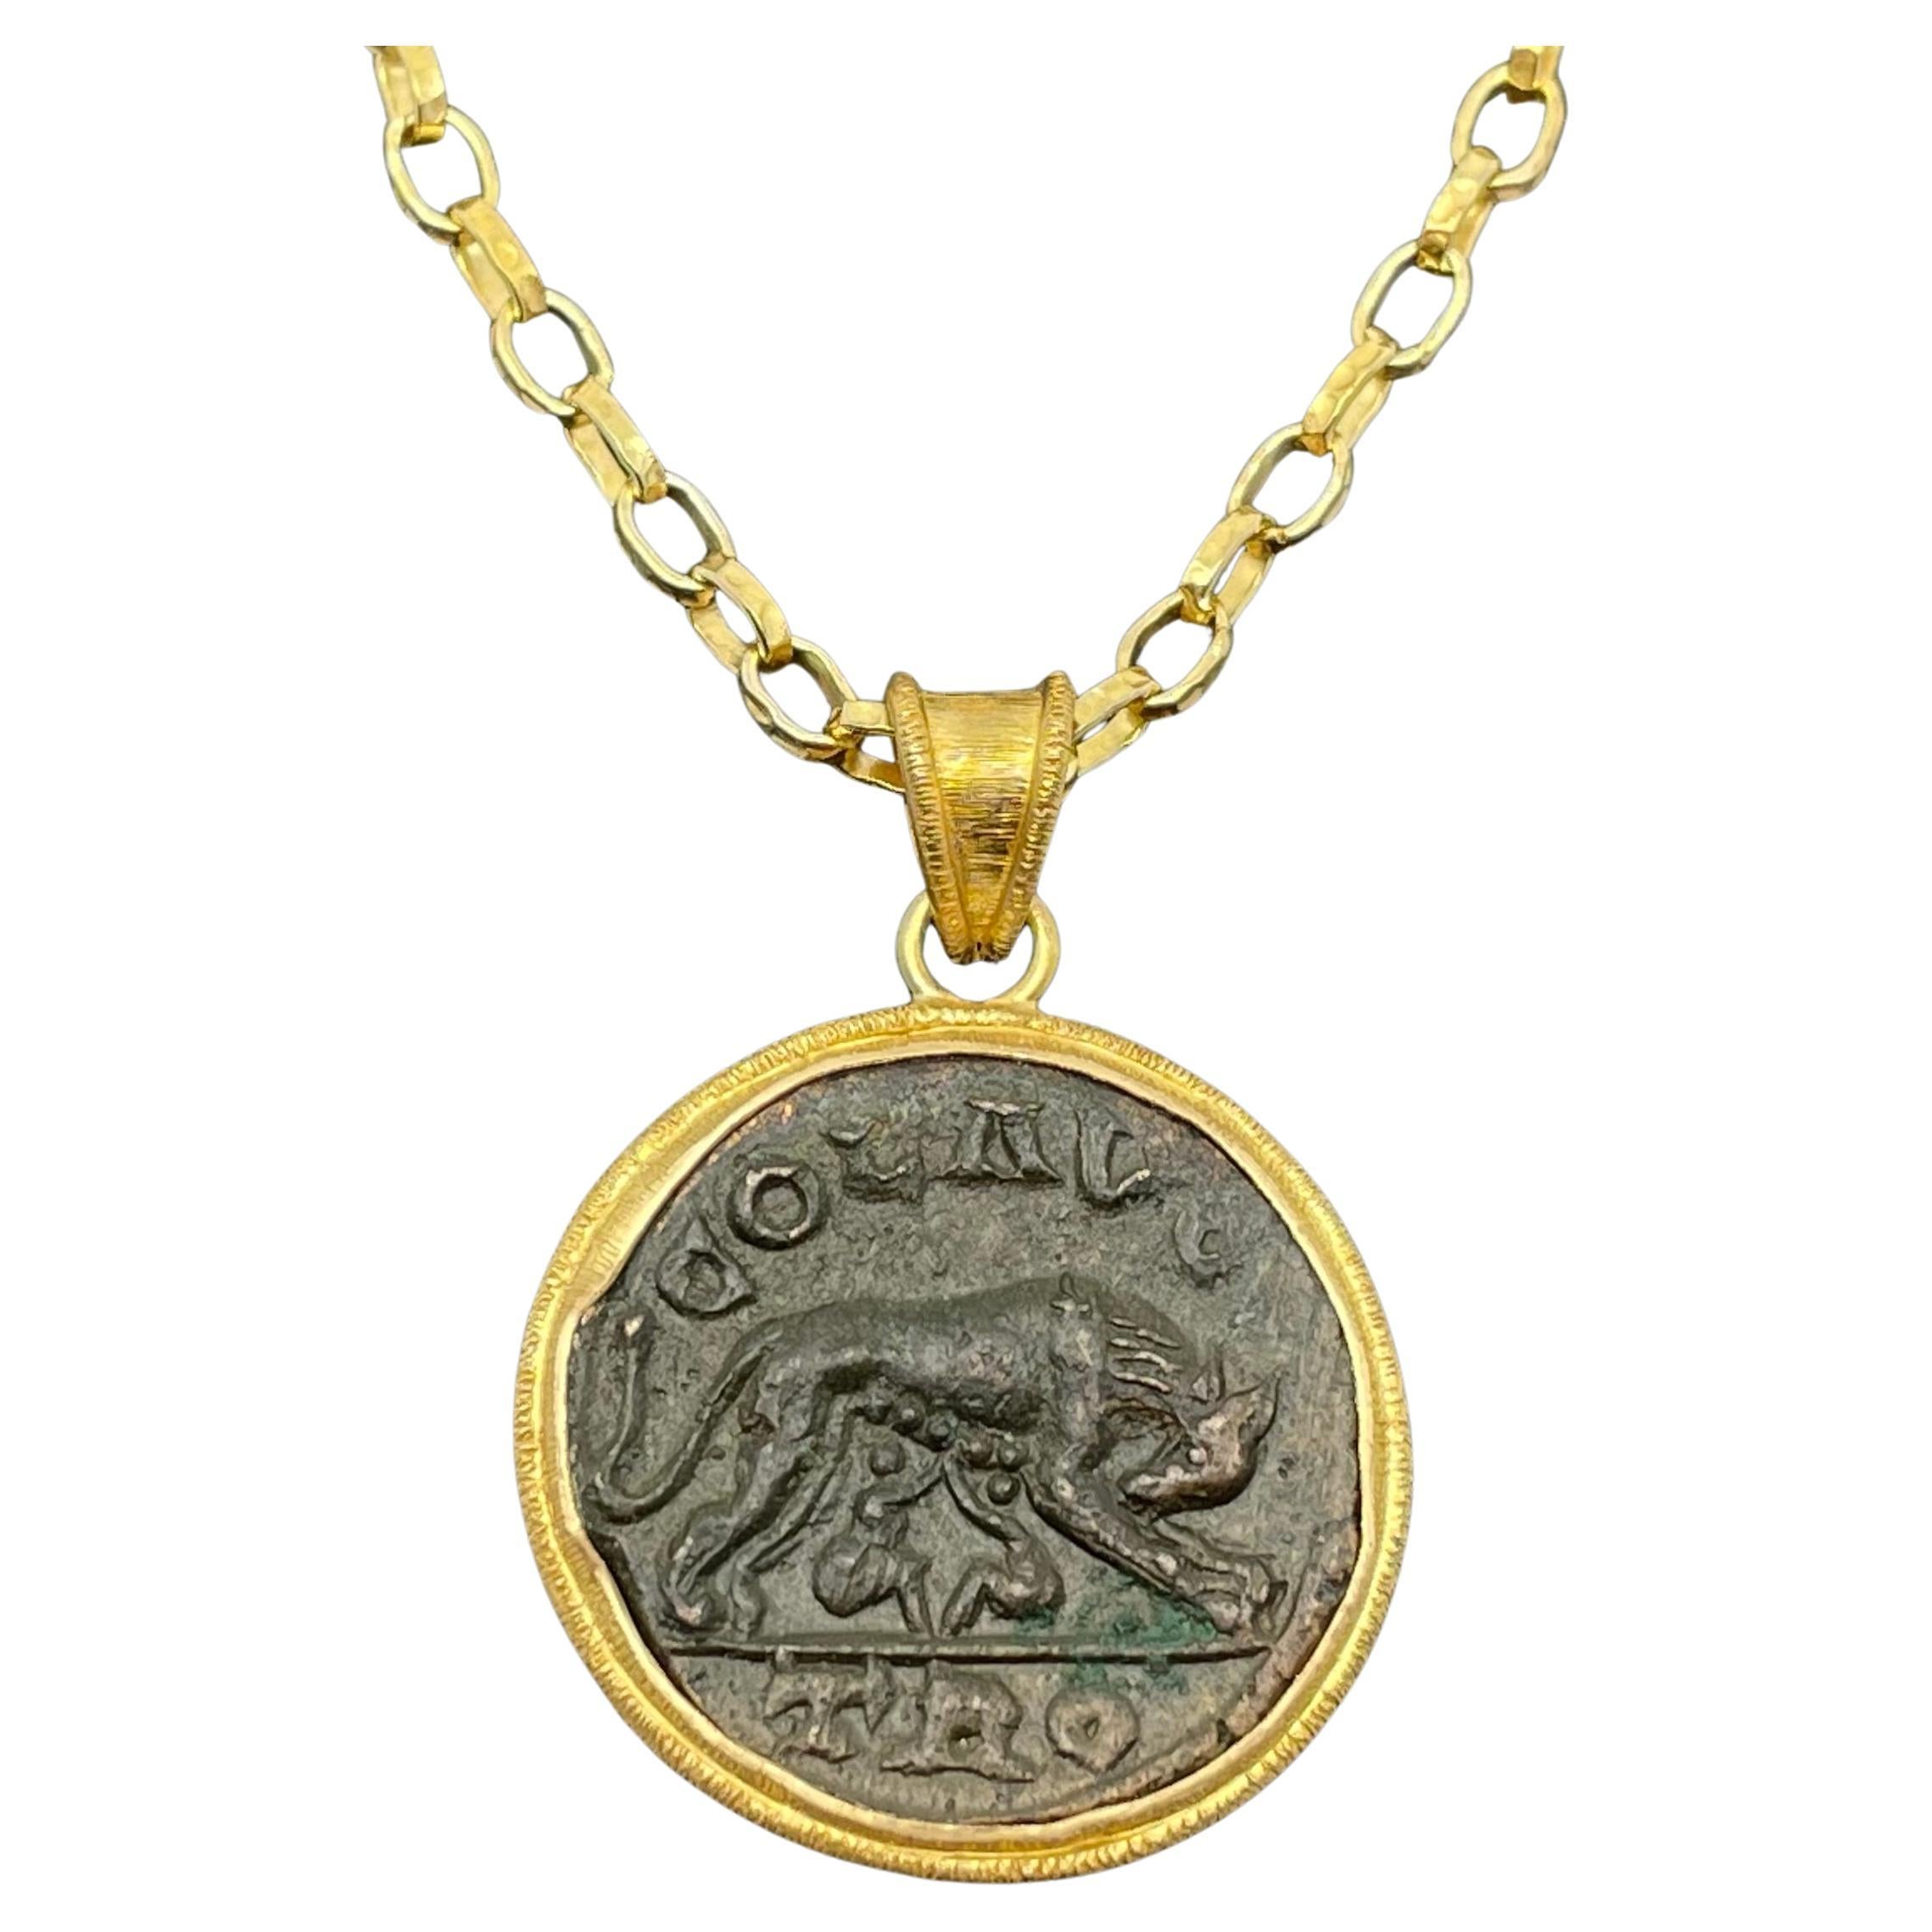 Pendentif en or 18 carats avec pièce de monnaie romaine antique Romulus et Remus du 3e siècle